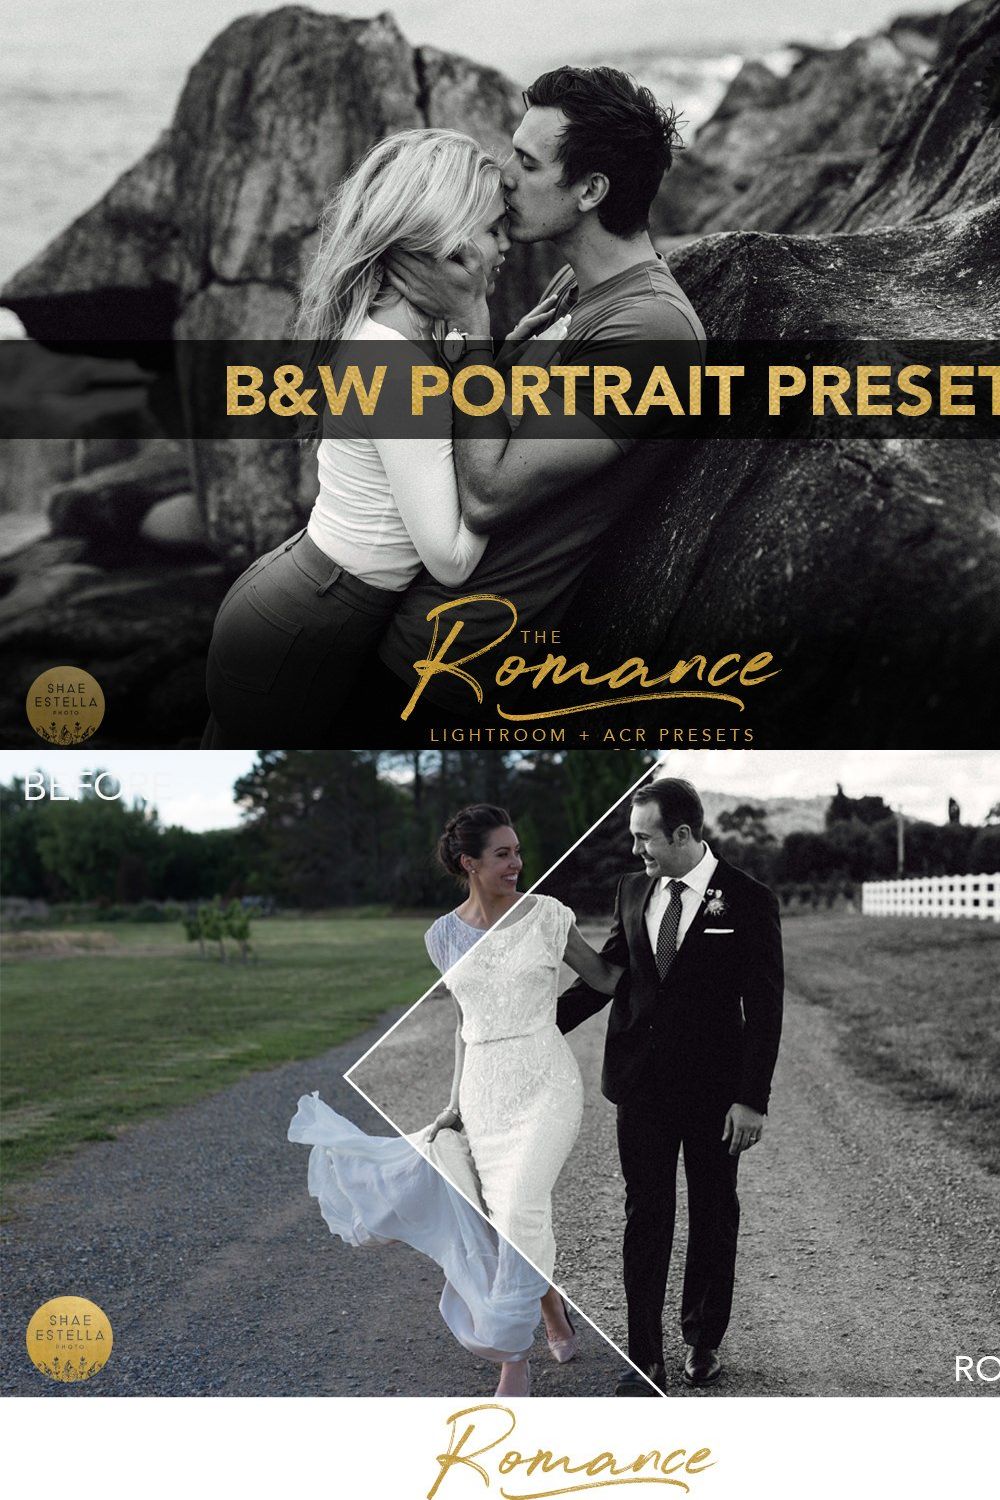 B&W Portrait Presets ACR Lightroom pinterest preview image.